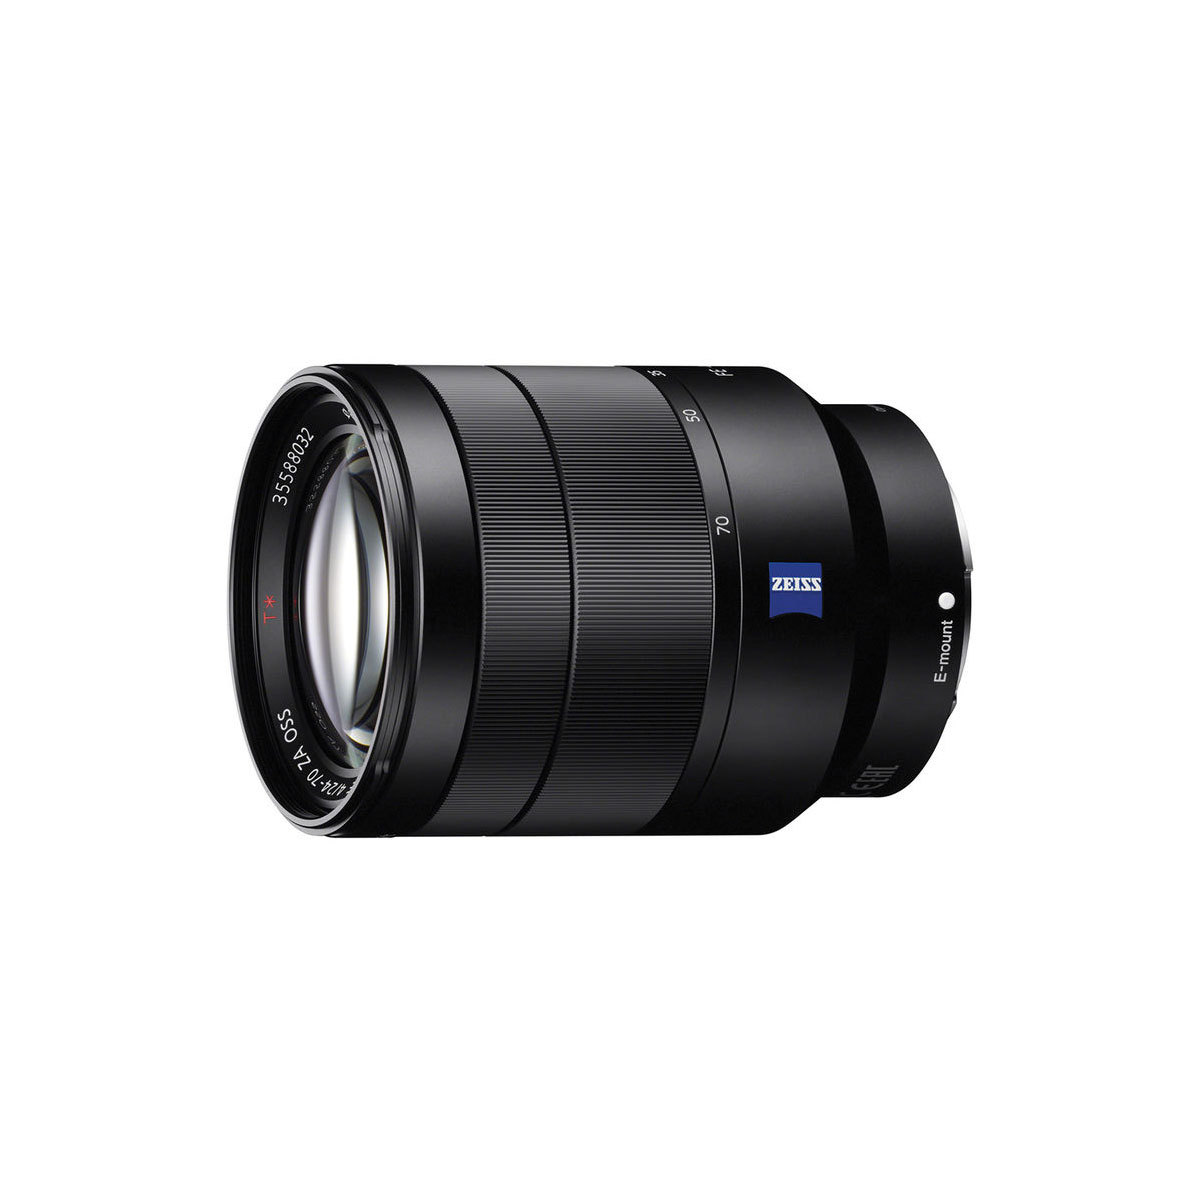 Sony Vario-Tessar T* FE 24-70mm f/4 ZA OSS Lens – The Camera